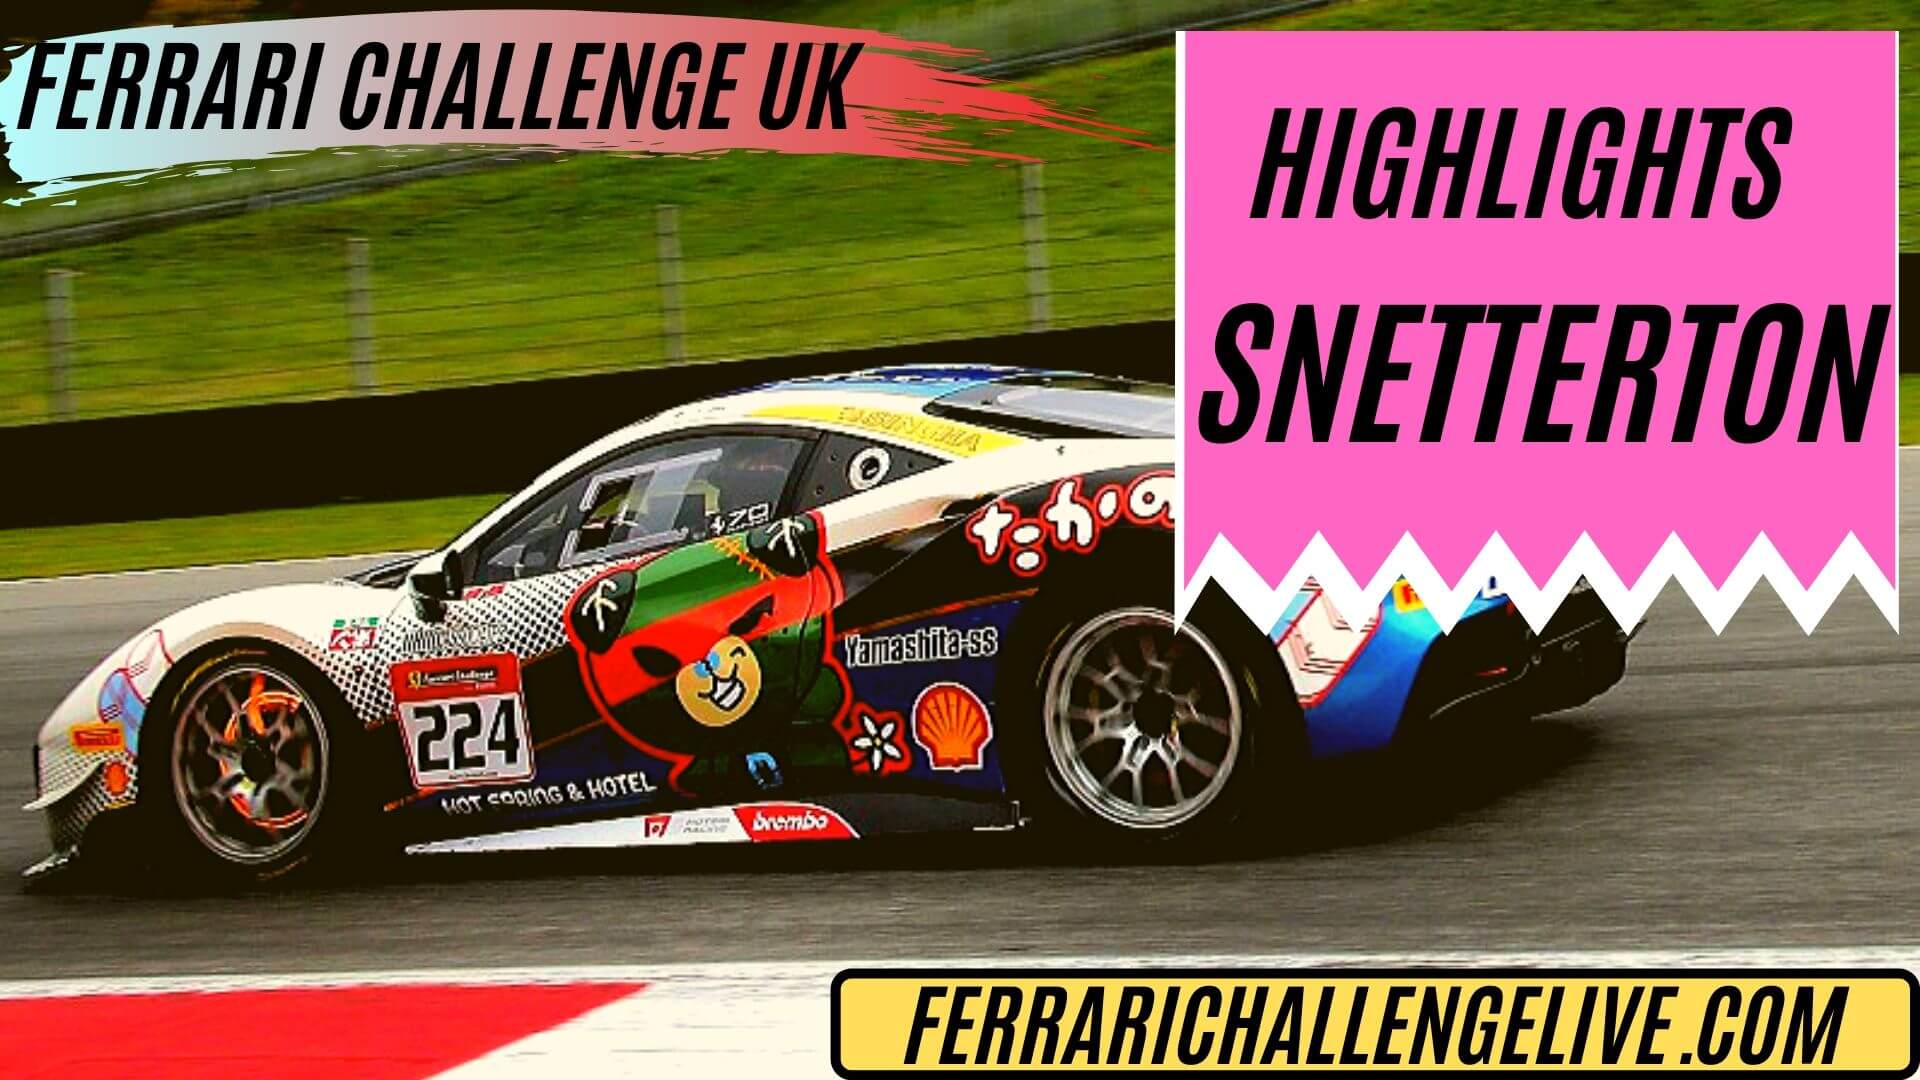 Snetterton Ferrari Challenge UK Highlights 2019